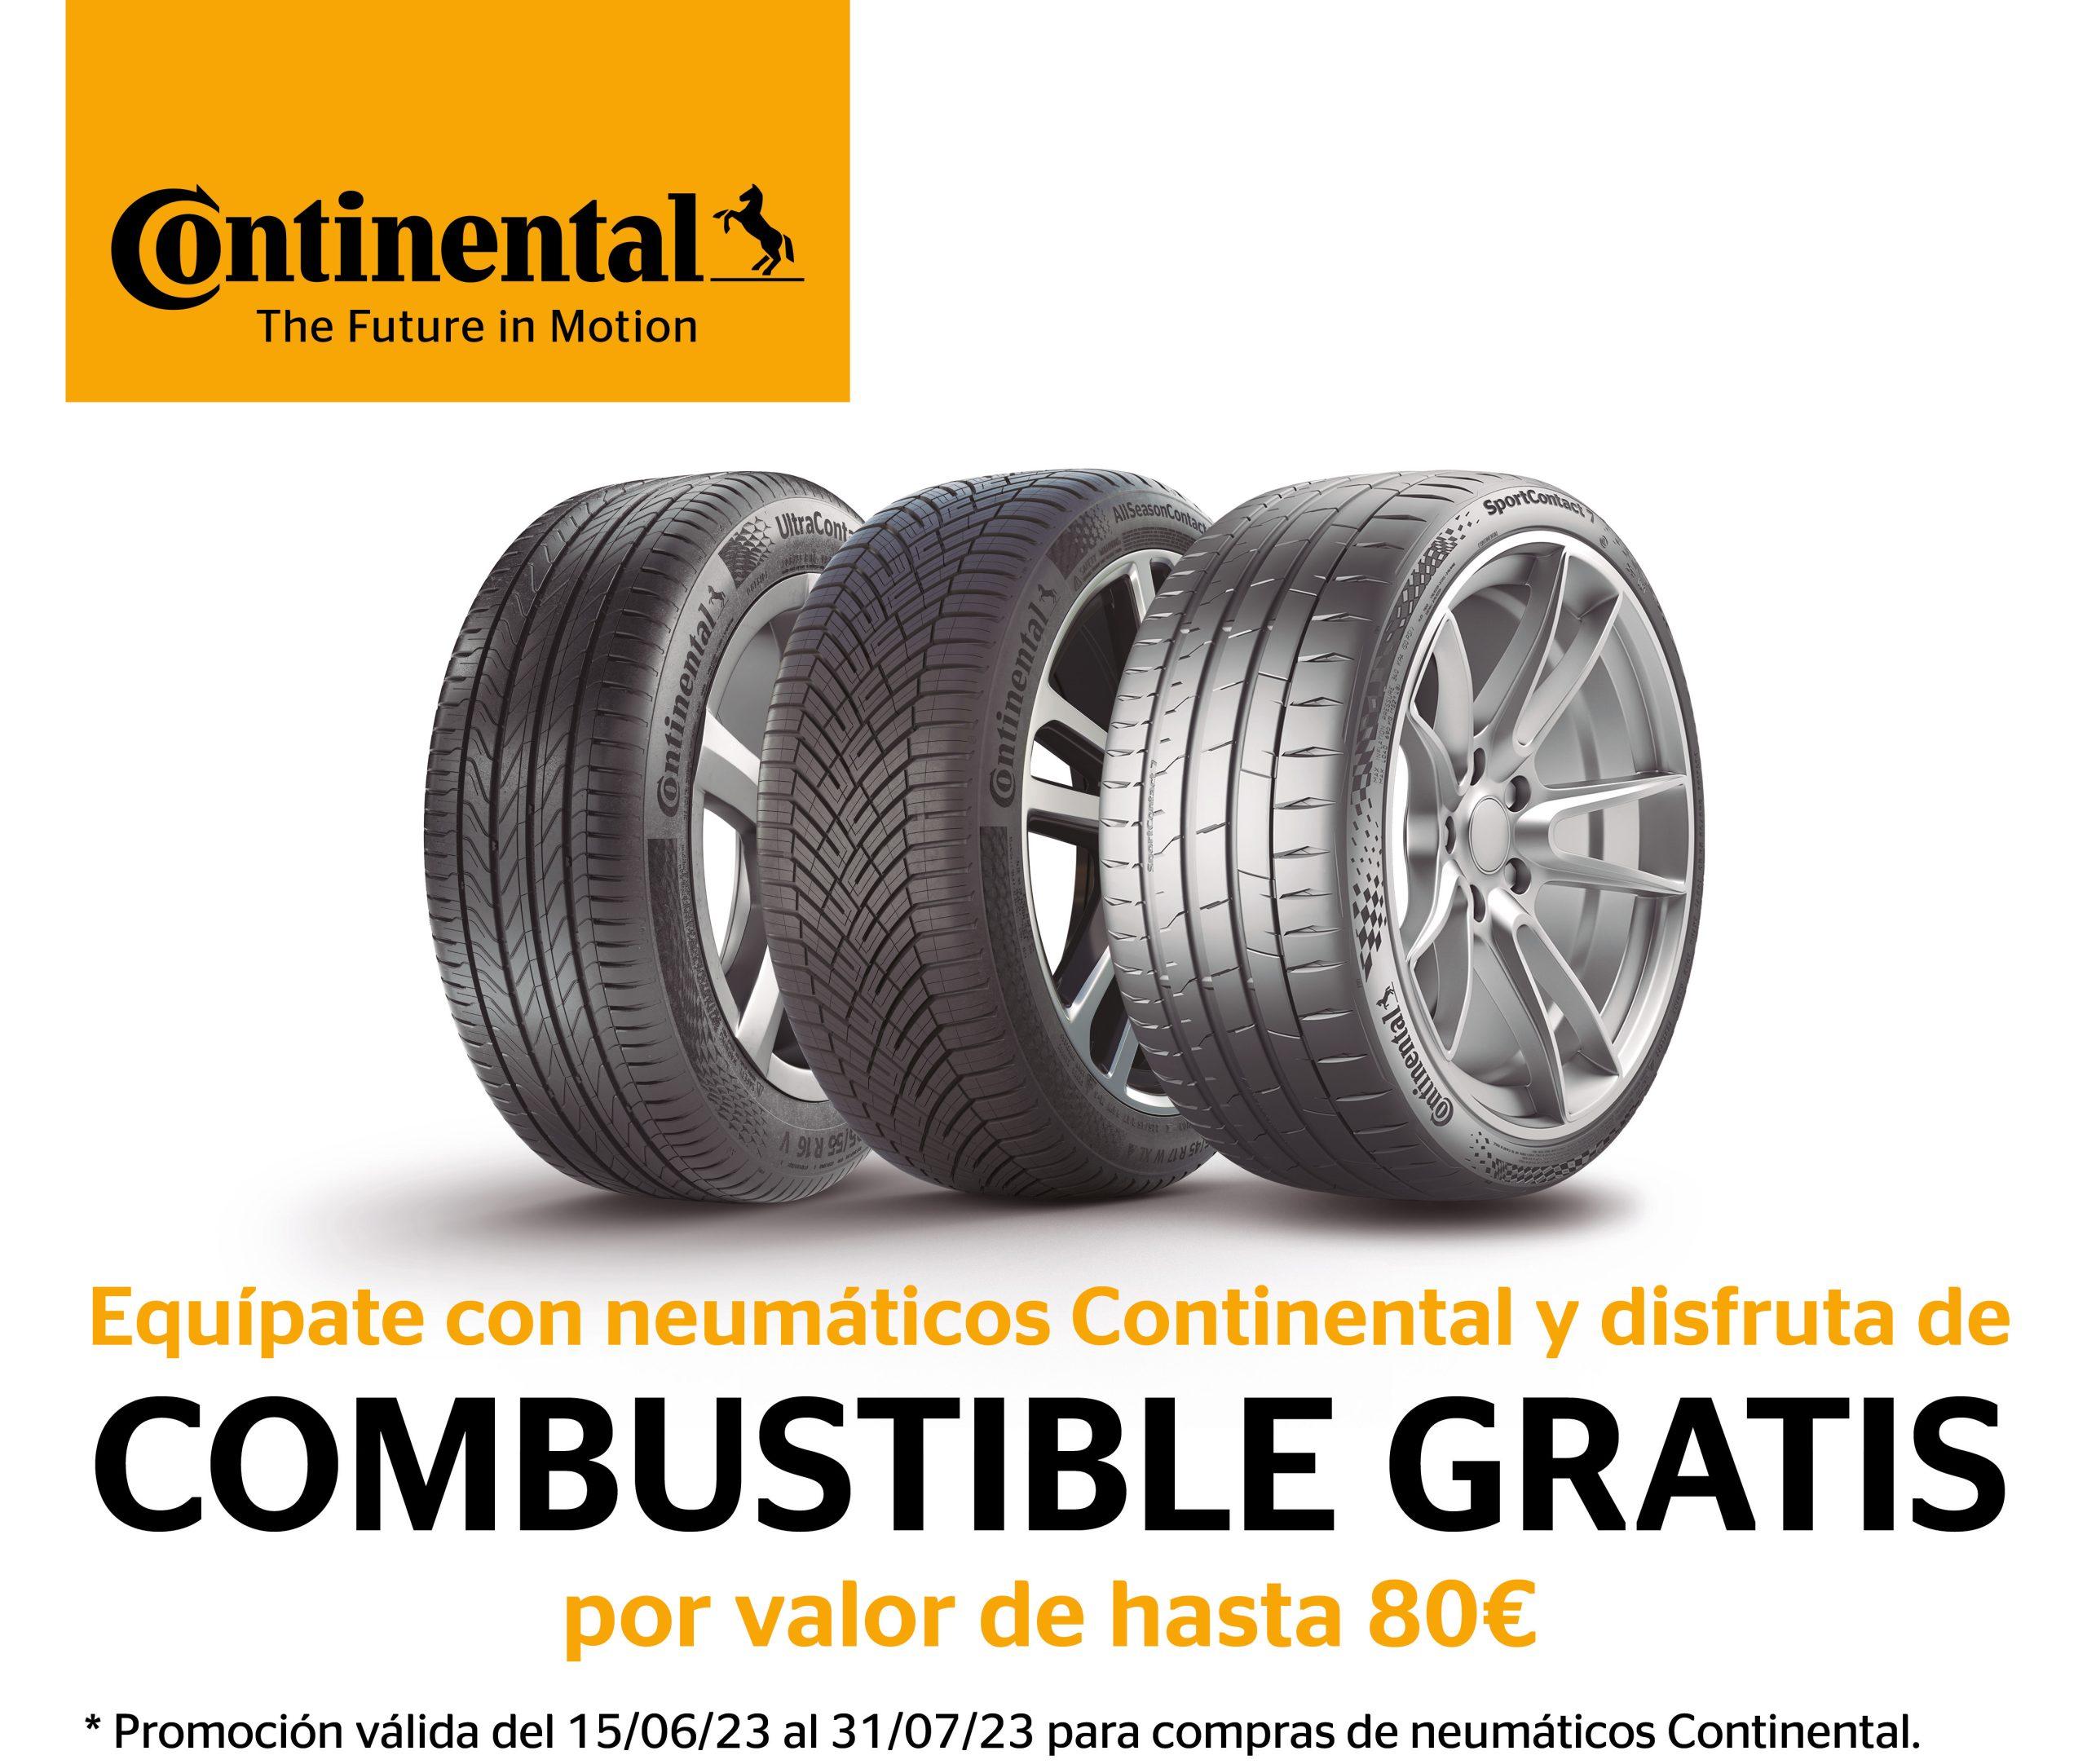 Imagen promocional de Contiental con tres neumáticos y el texto "Equípate con neumáticos Contiental y disfruta de combustible gratis por valor de hasta 80€"